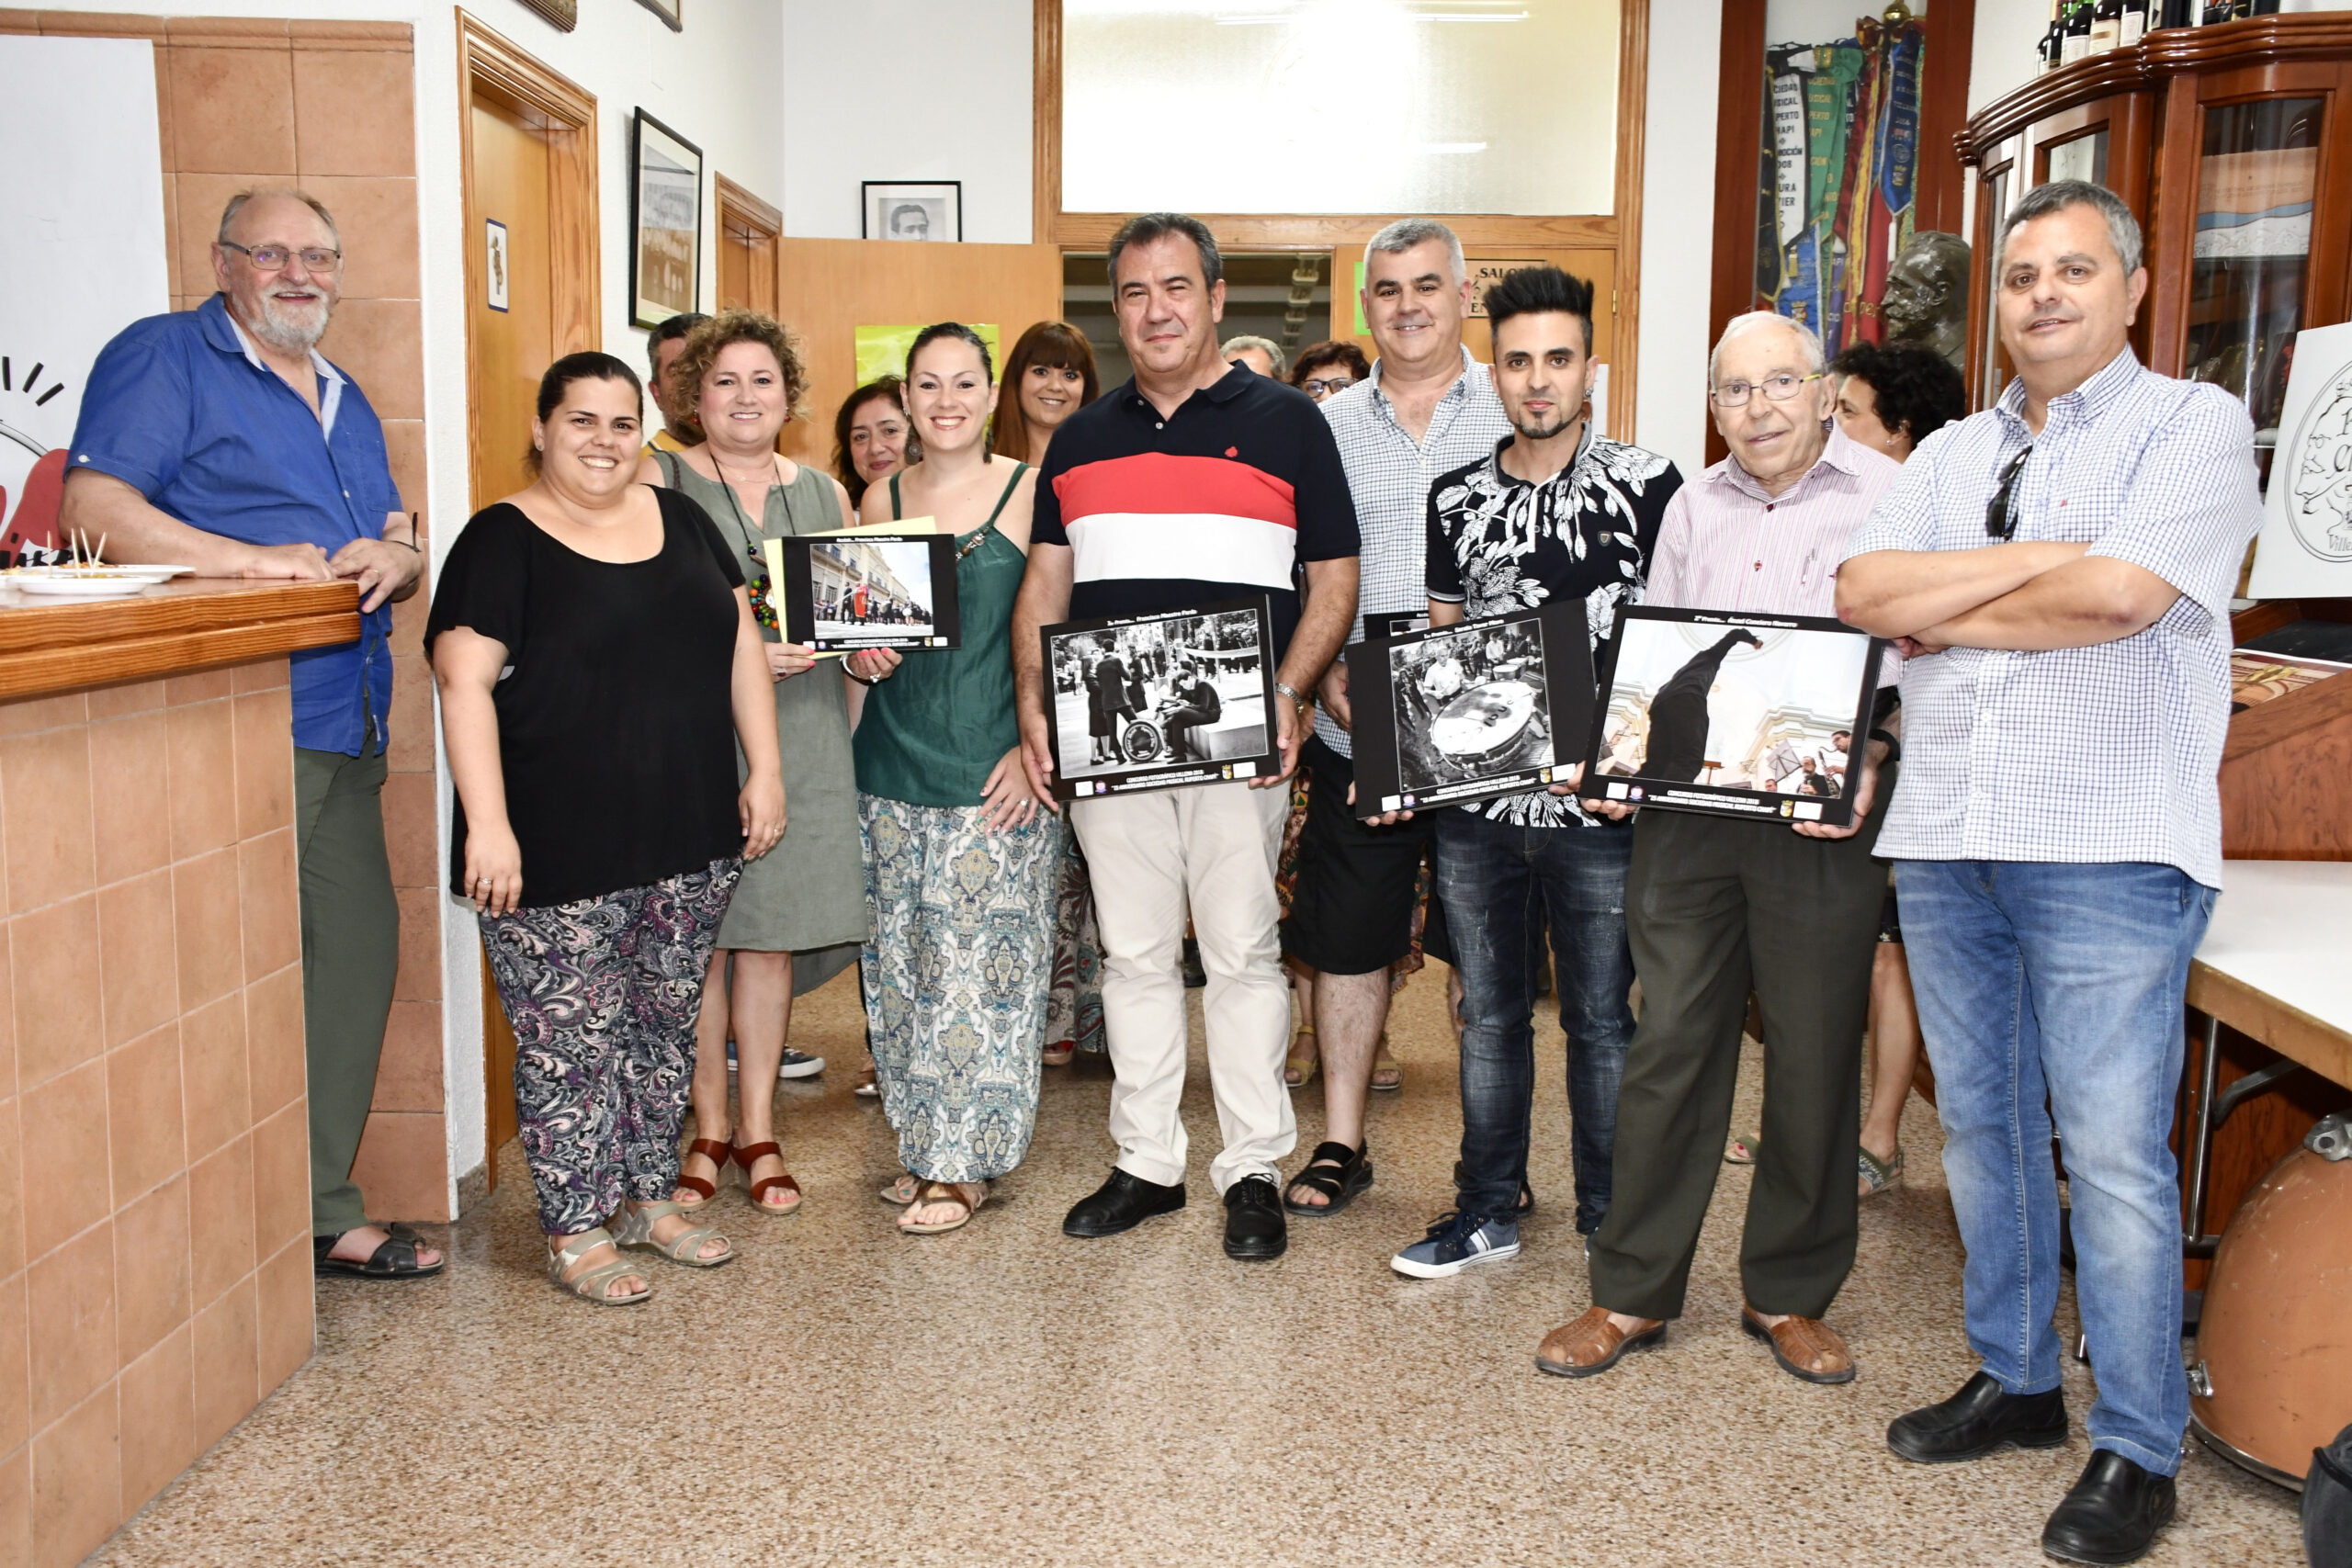 Villena Cuéntame y la Sociedad Musical hacen entrega de los premios del concurso fotográfico 25 aniversario